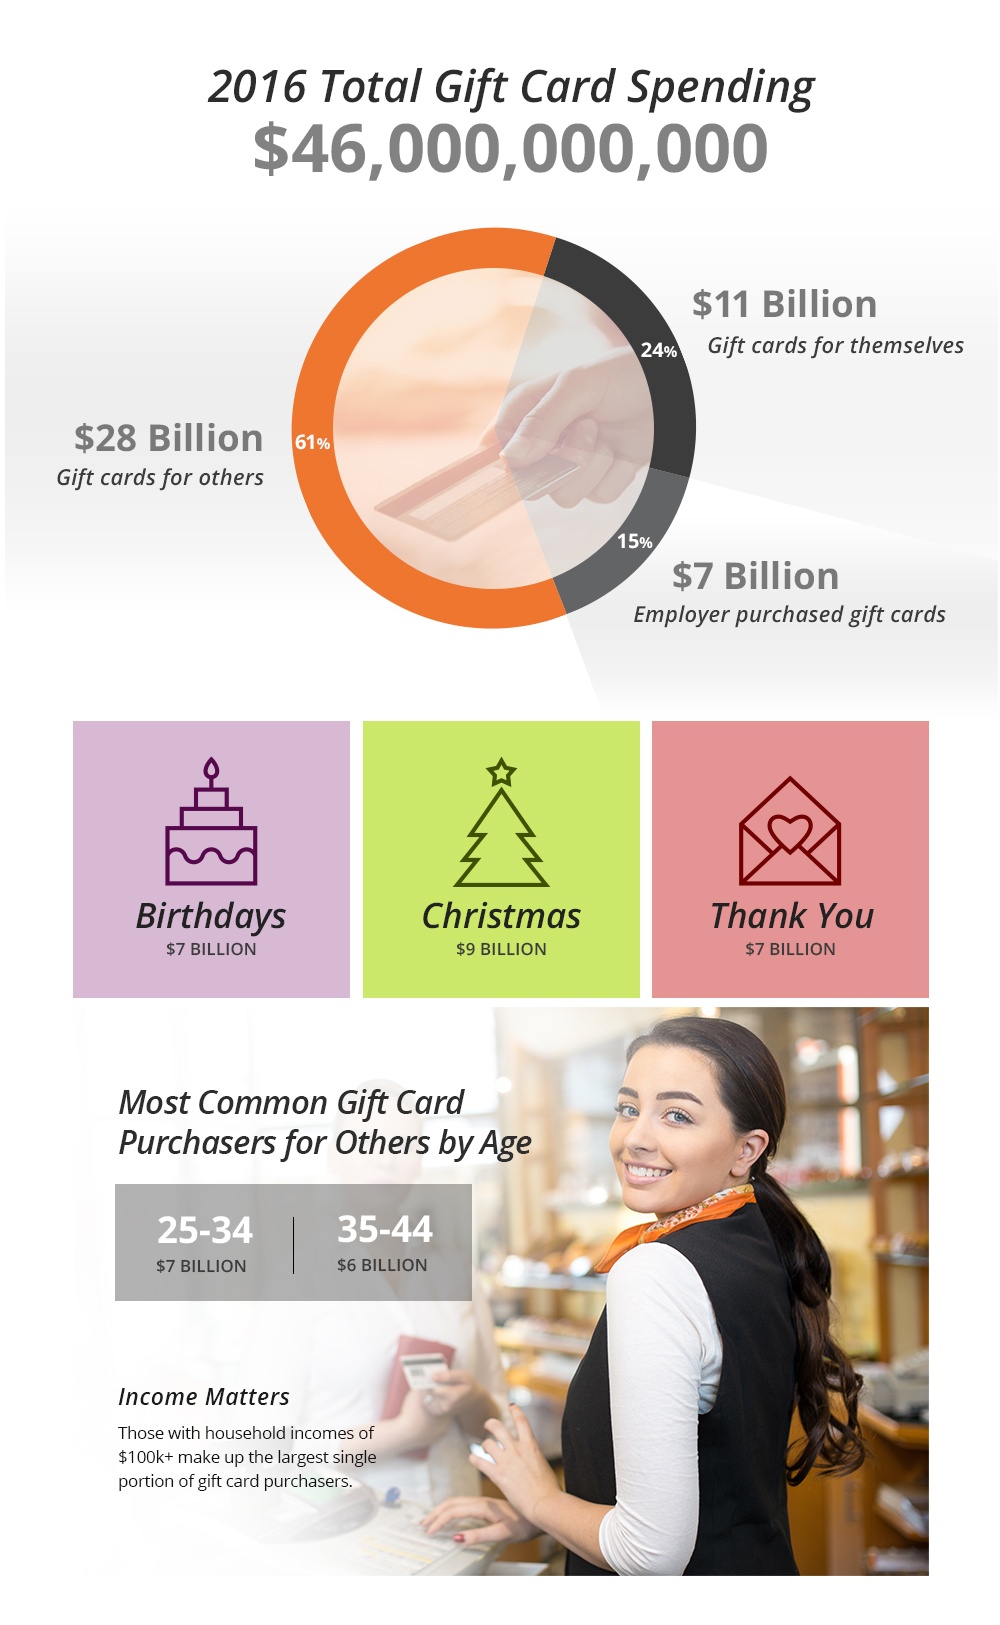 Gift card spending